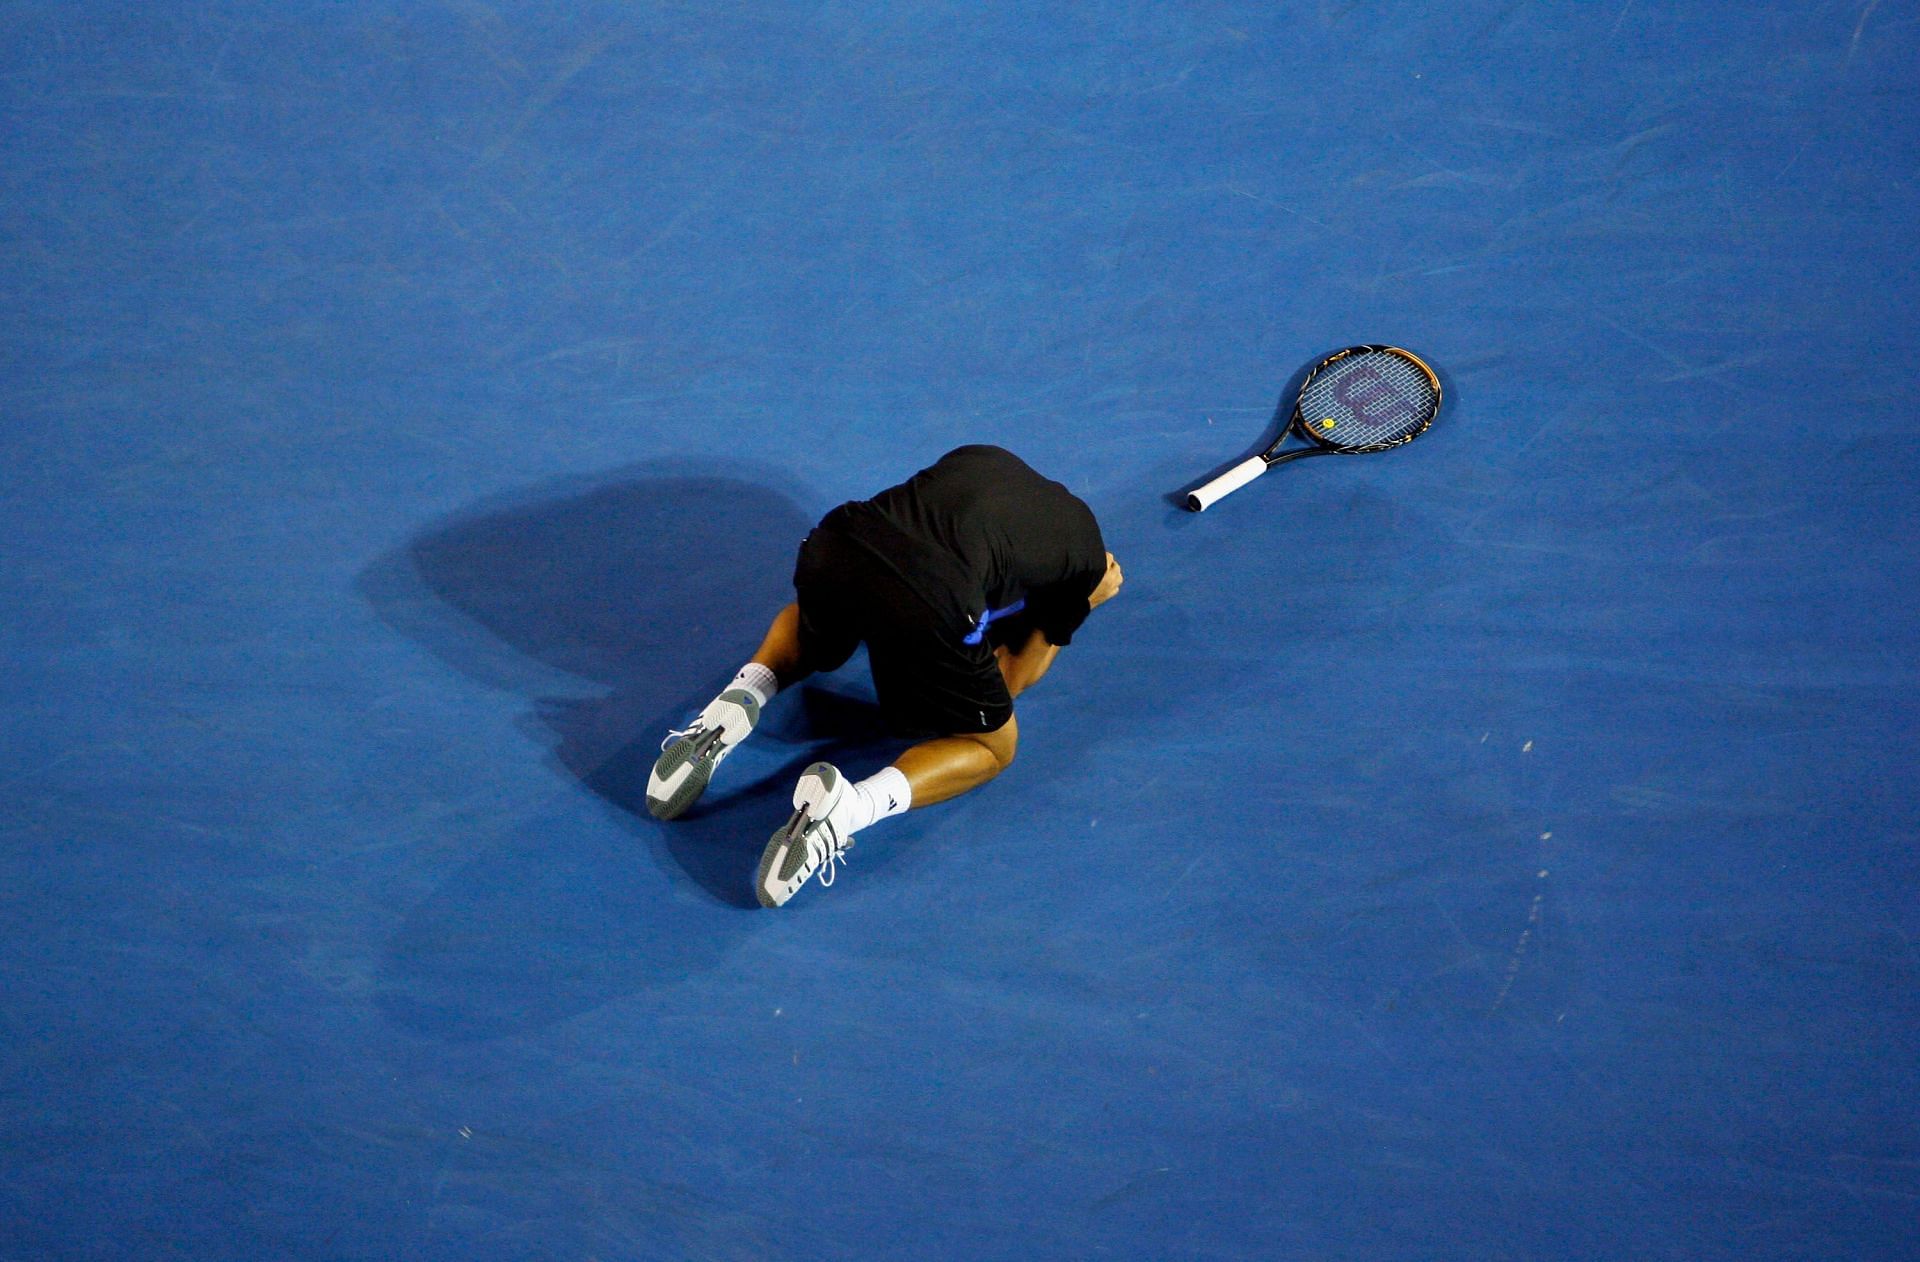 Novak Djokovic celebrating his win over Roger Federer in the 2008 Australian Open semifinal